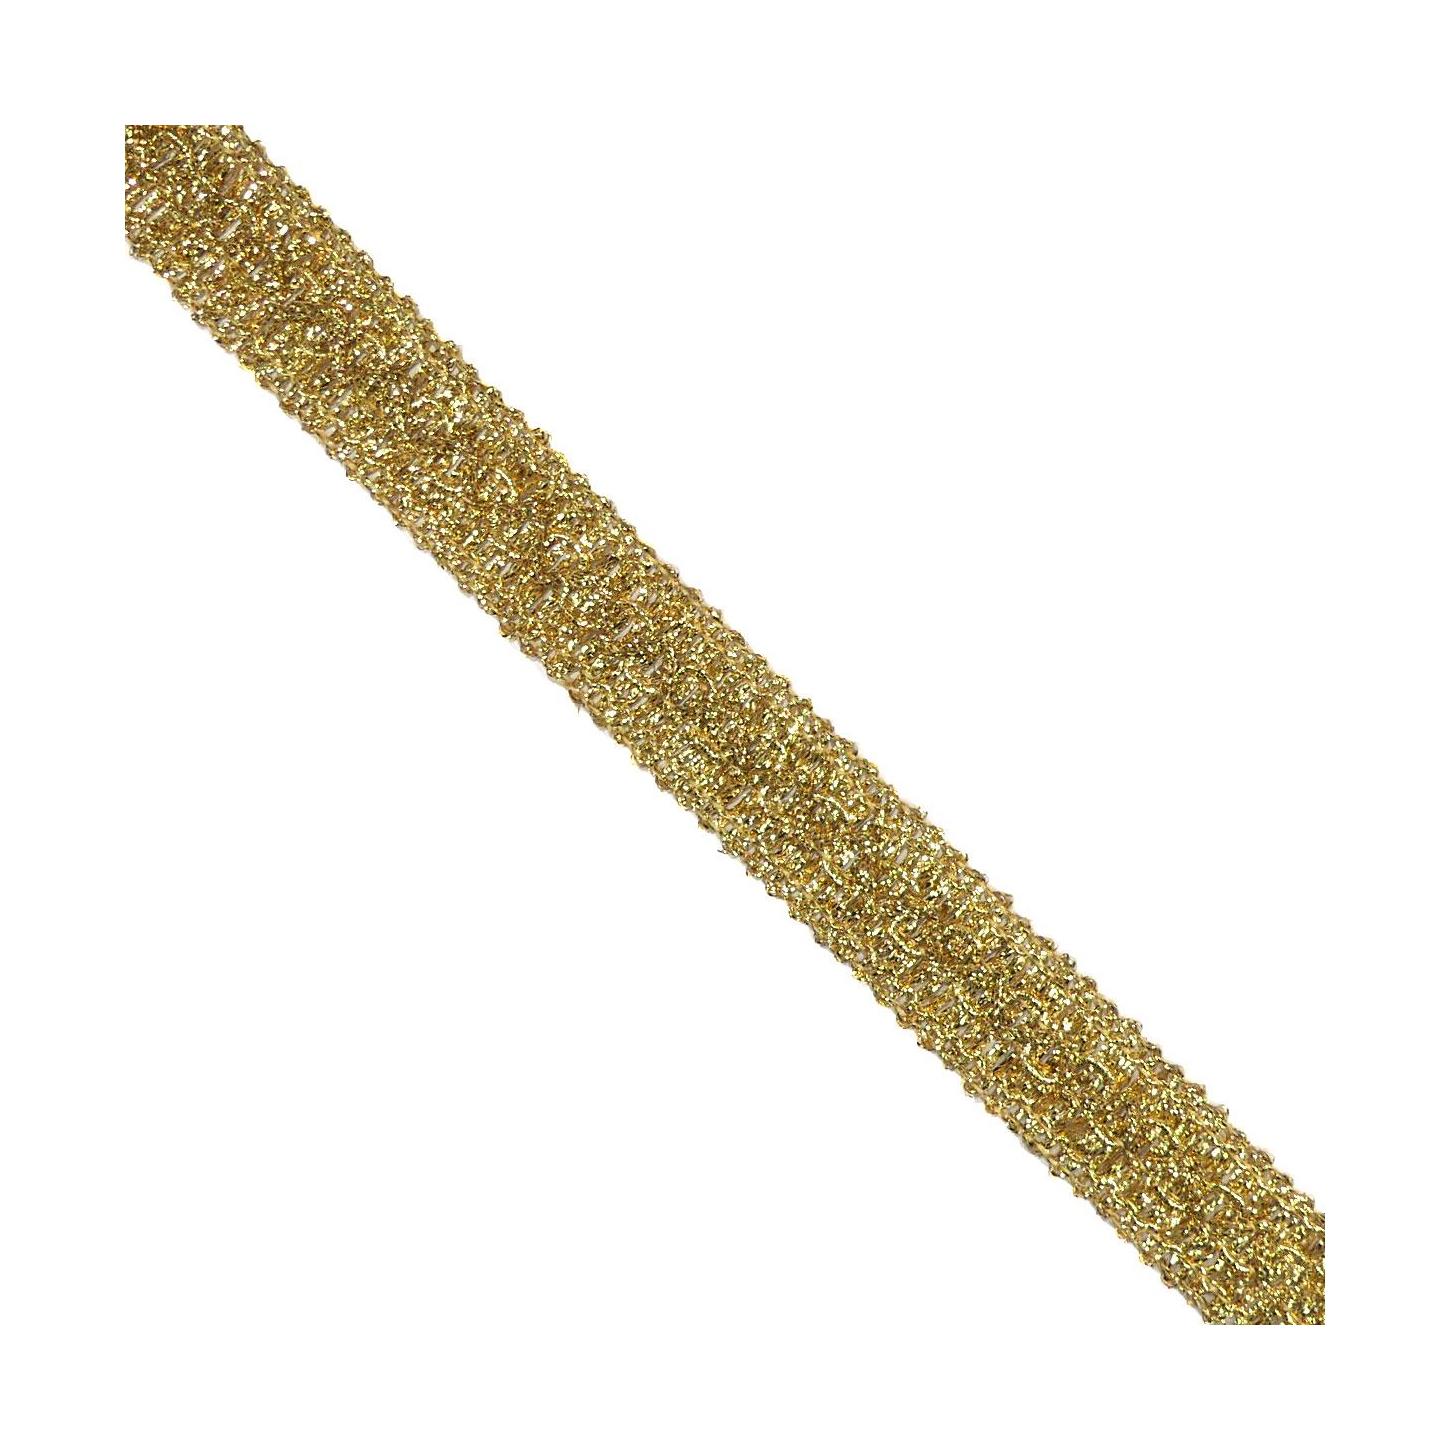 Pasamanería ondulada dorada, 19 mm (cajón pasamanerías A)